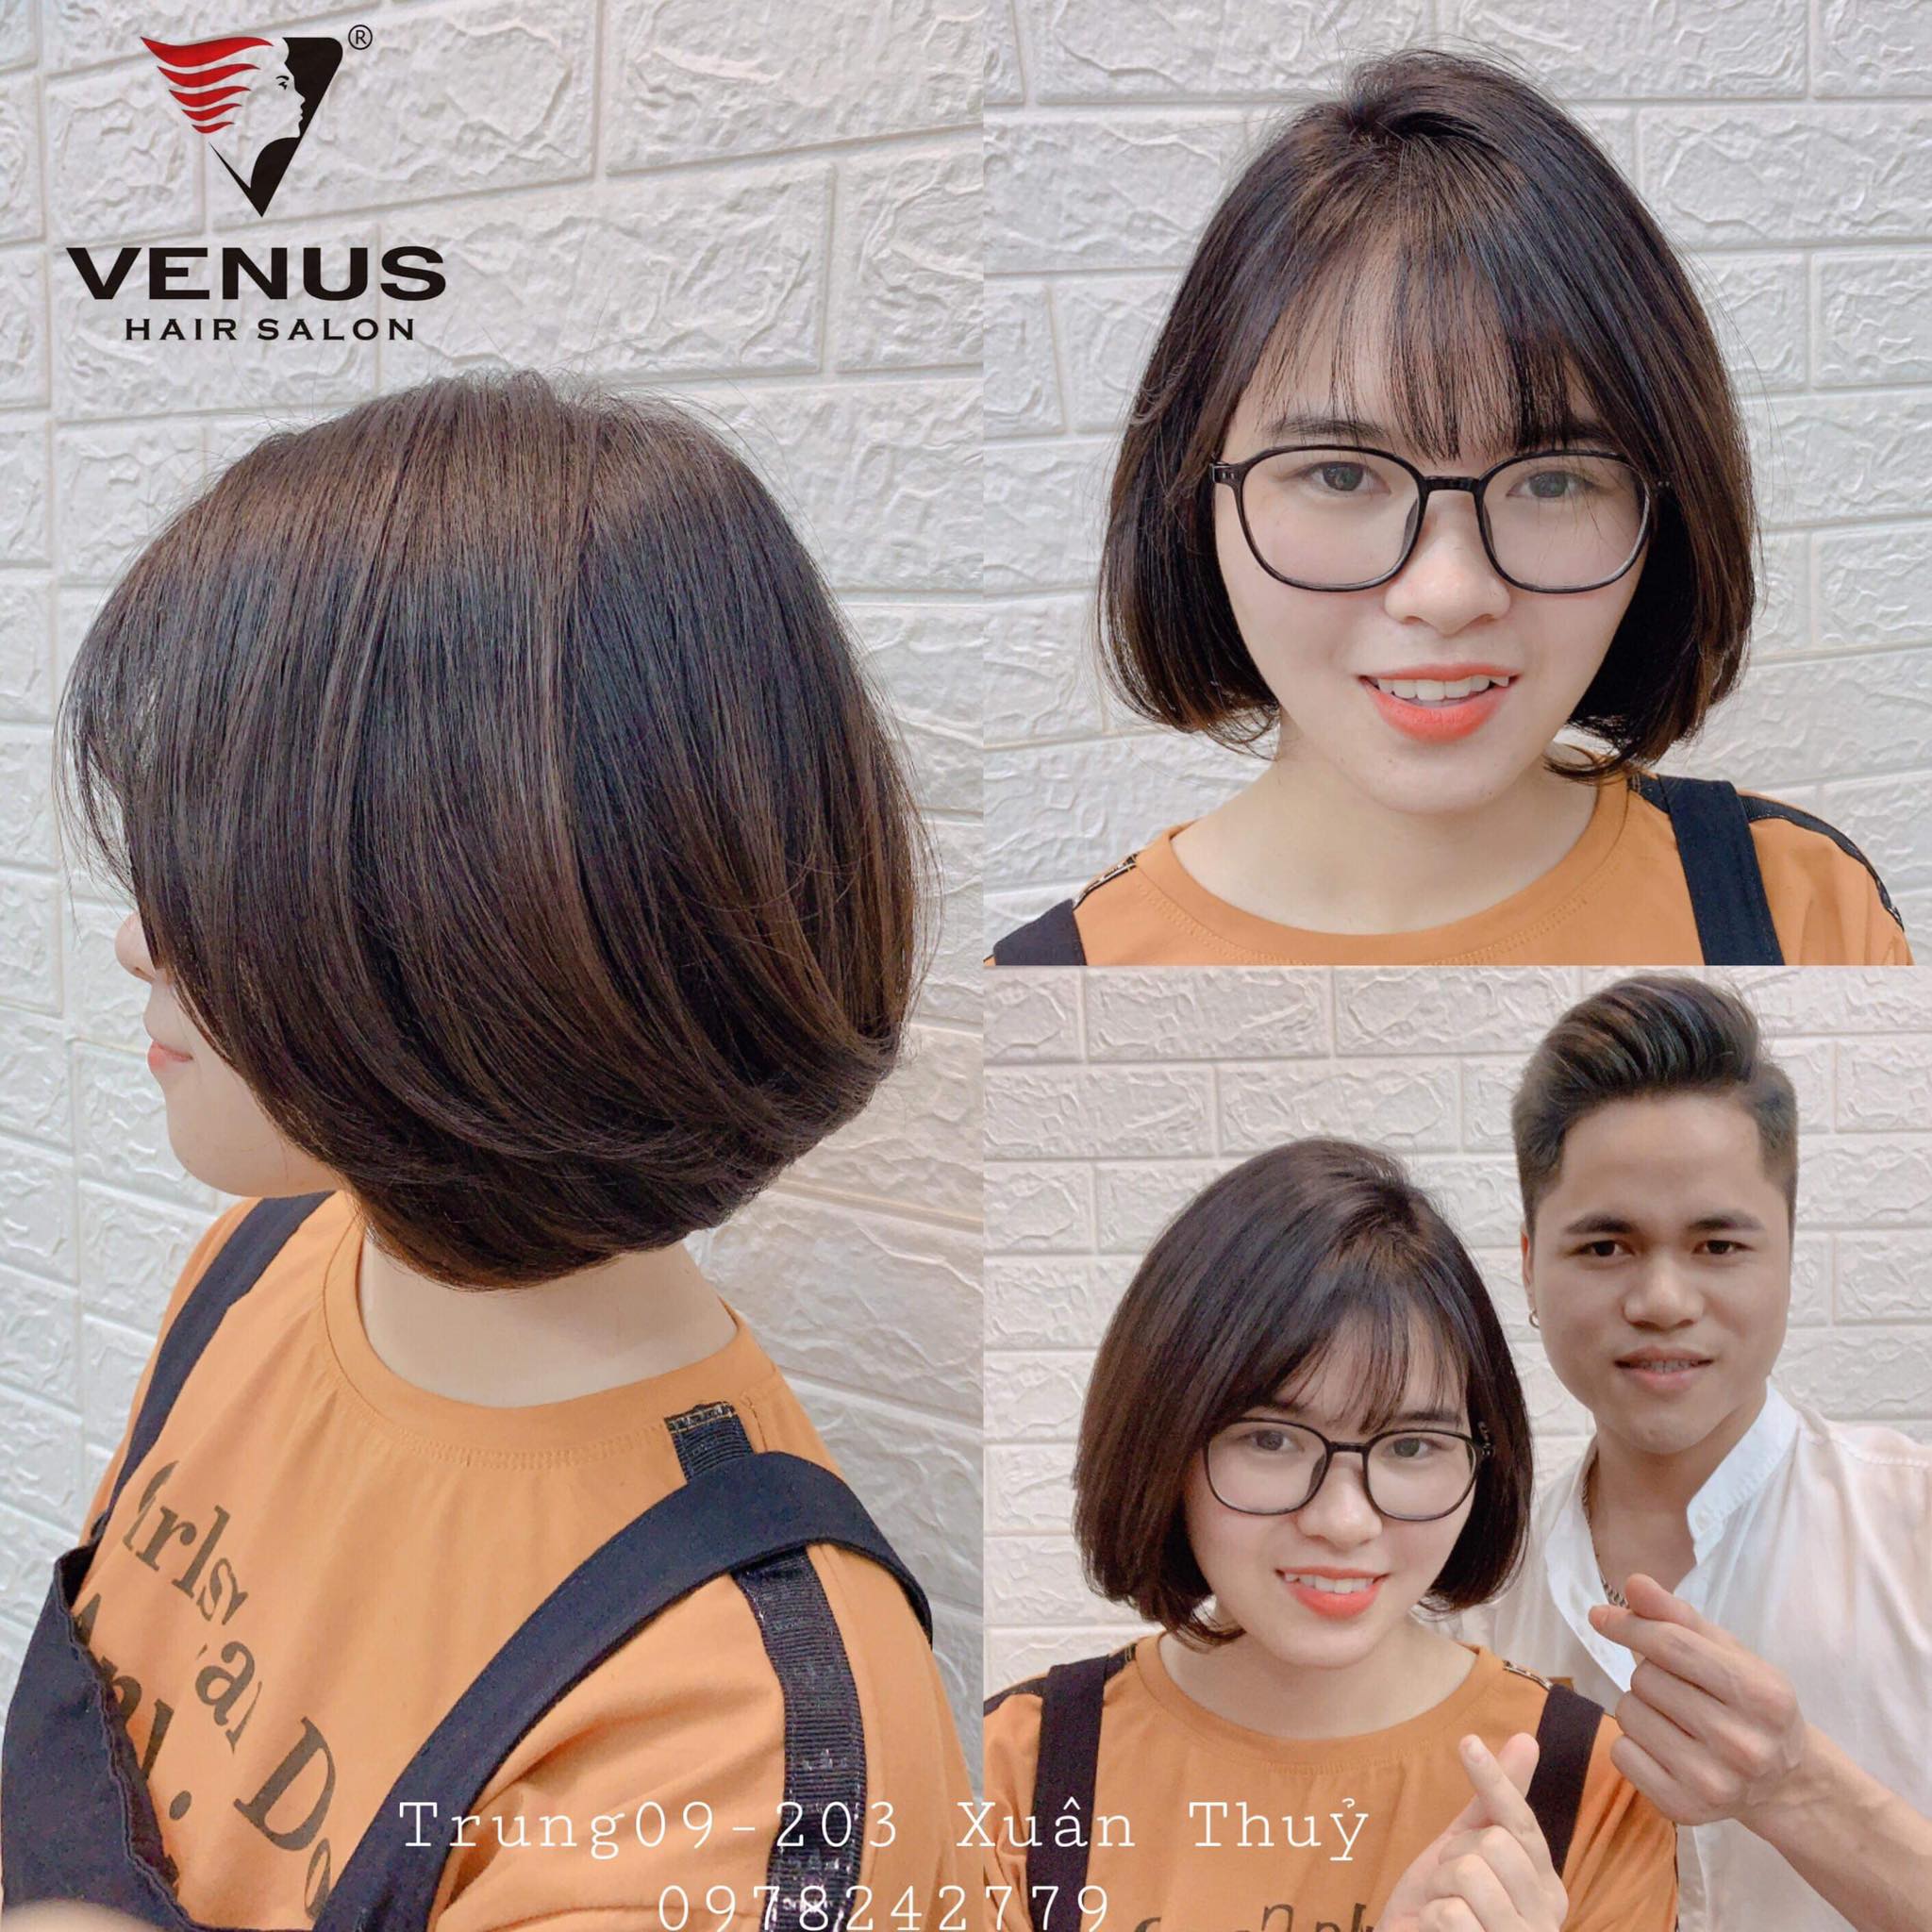 Venus Hair Salon 1